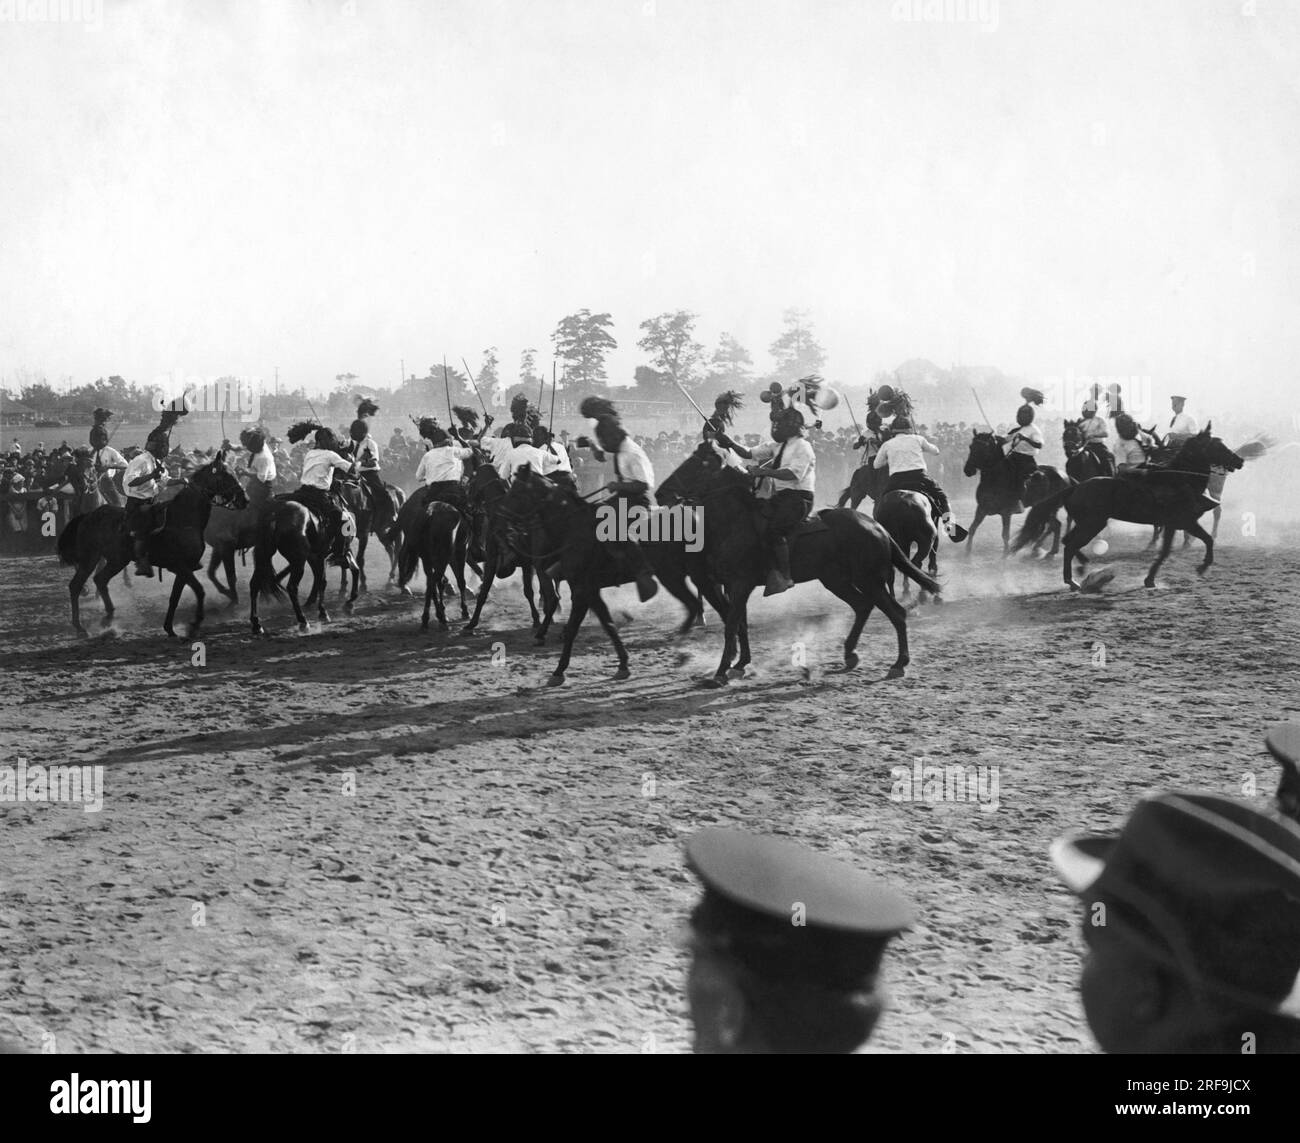 New York, New York : 17 septembre 1922 la police à cheval experte de New York montrant une partie de ses compétences en escrime sur le cheval lors des jeux annuels de la police Field Day à Jamiaca, long Island. Banque D'Images